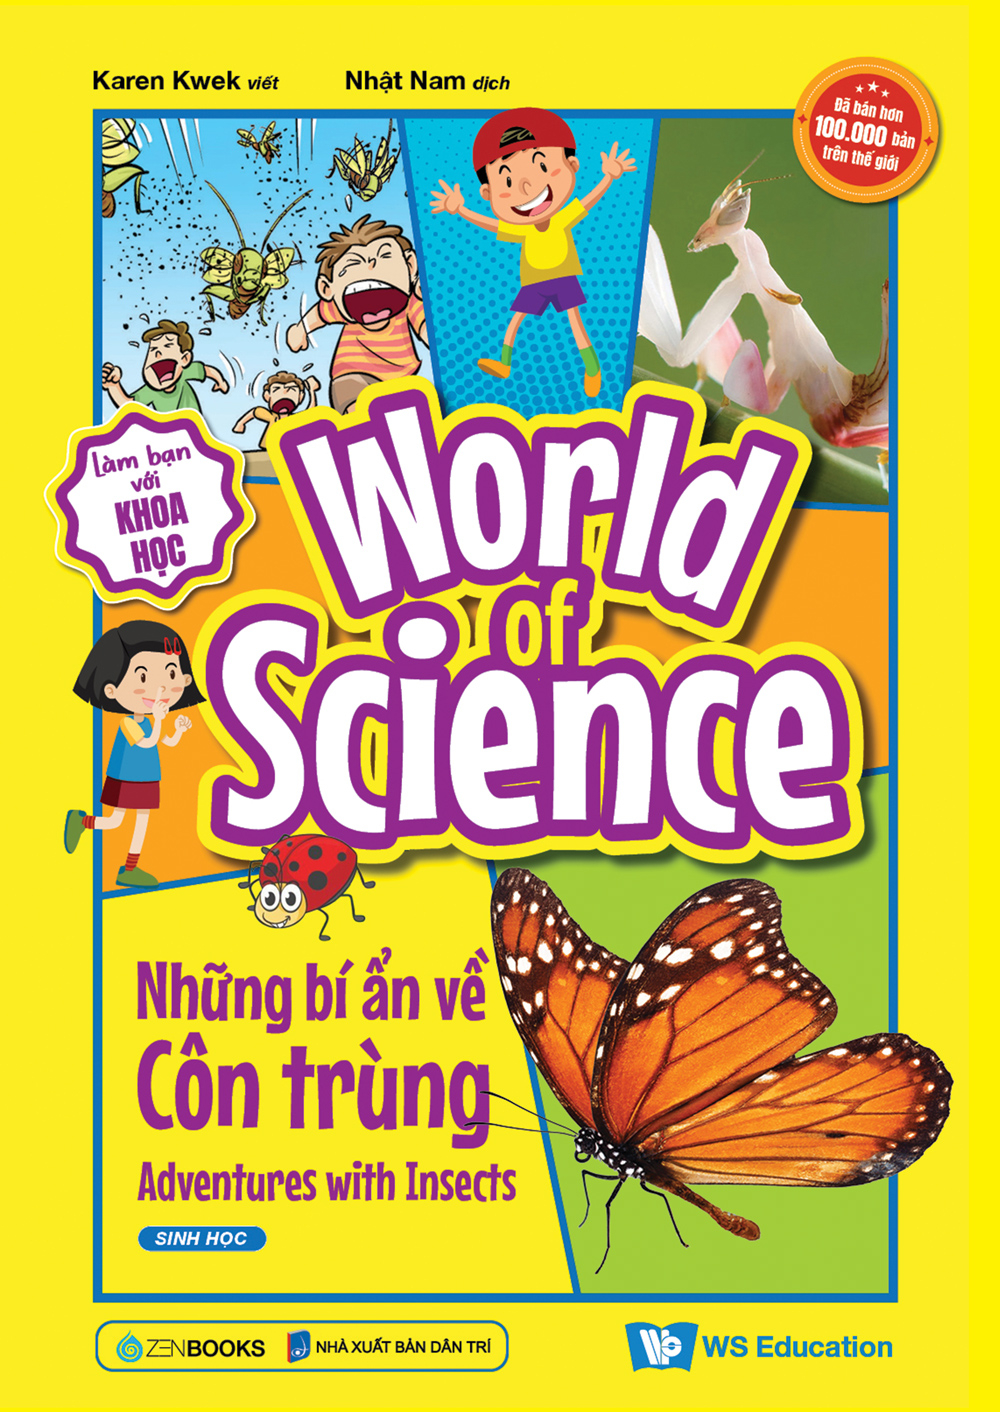 World Of Science - Những Bí Ẩn Về Côn Trùng